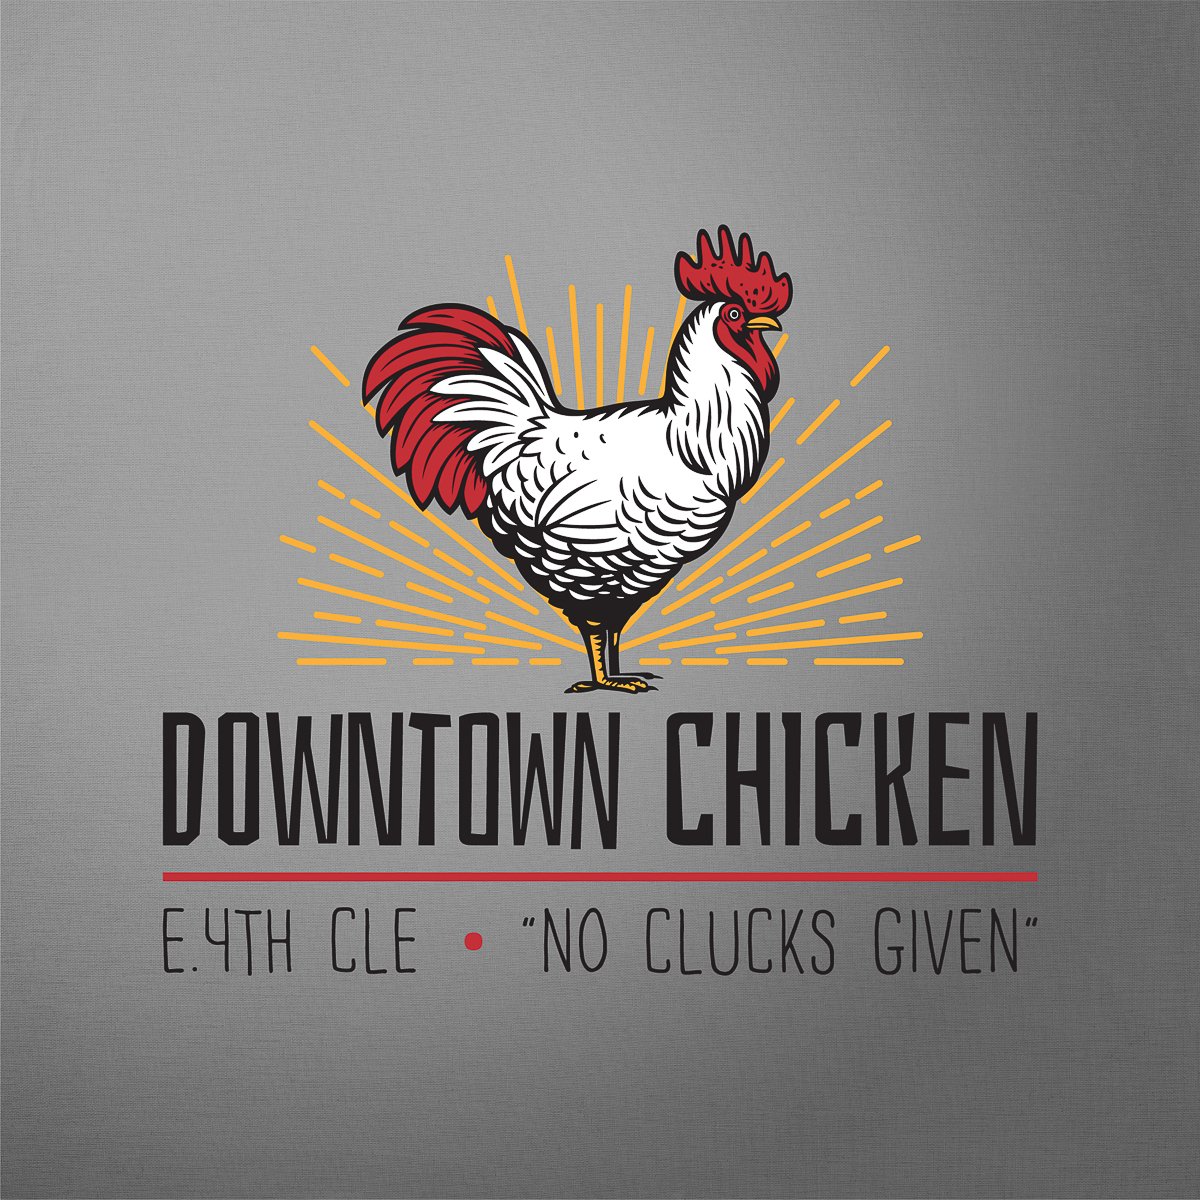 74_dt_chicken_logo.jpg